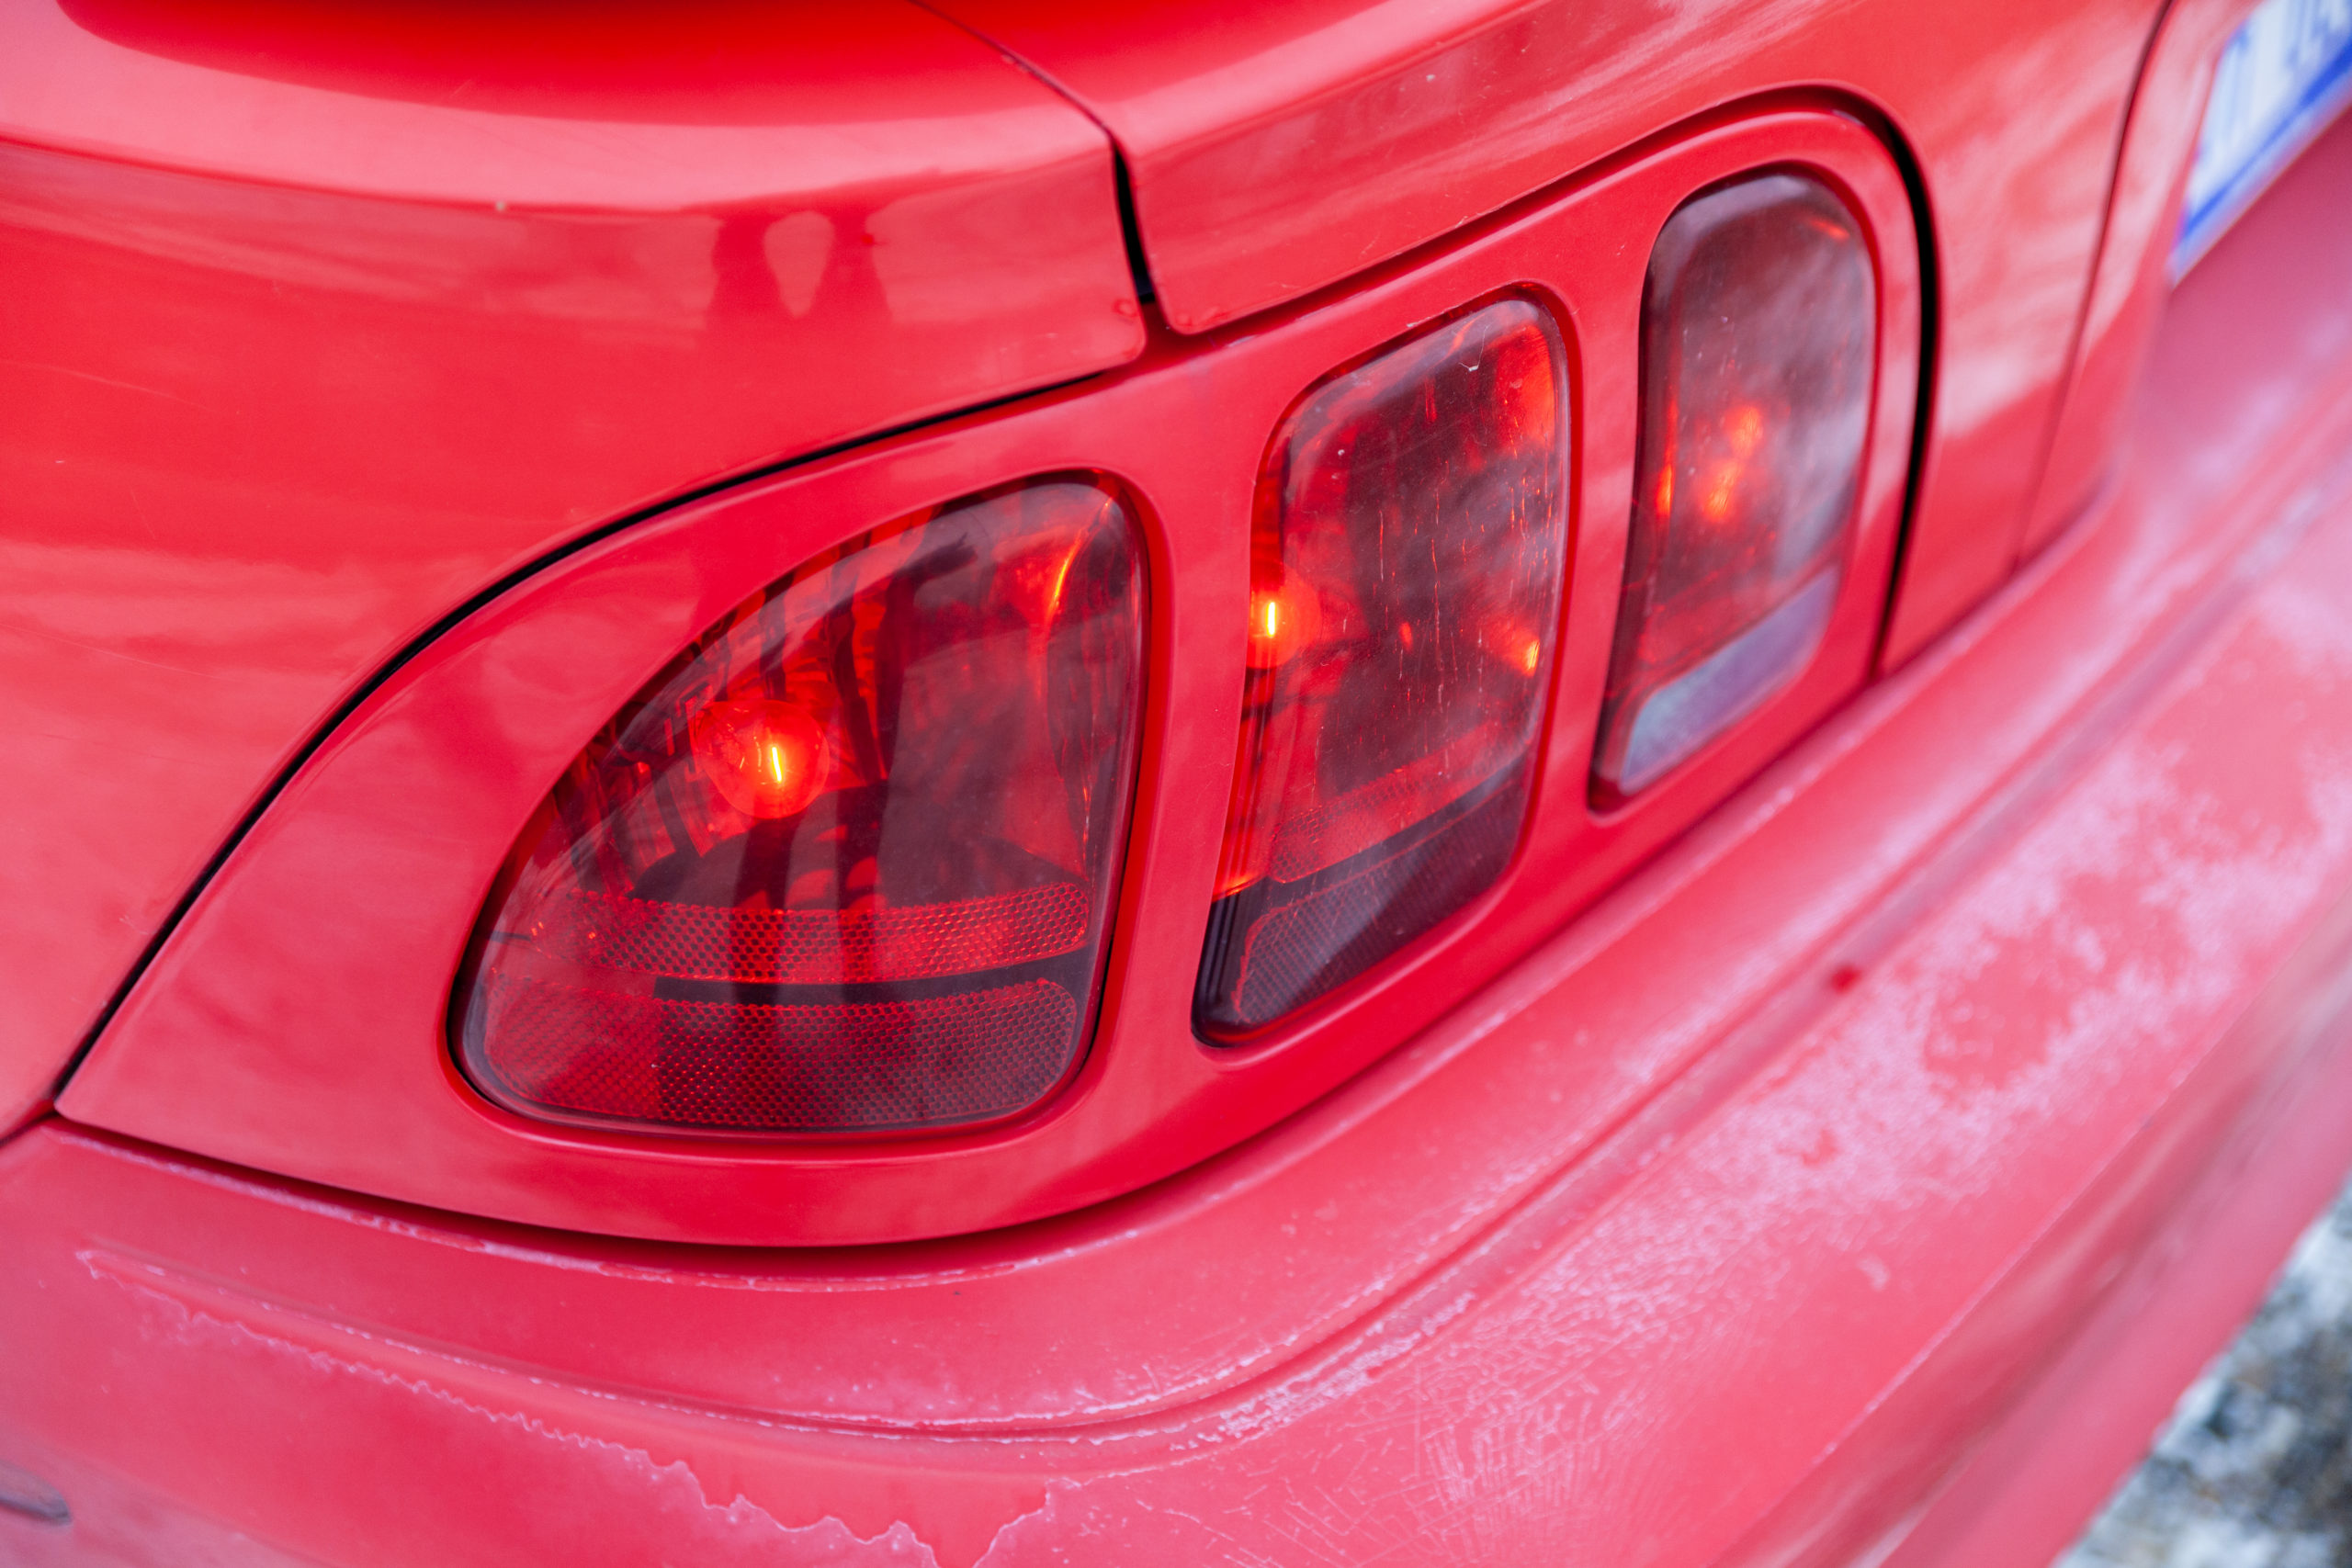 Drift Mustang Chris Stark taillight closeup